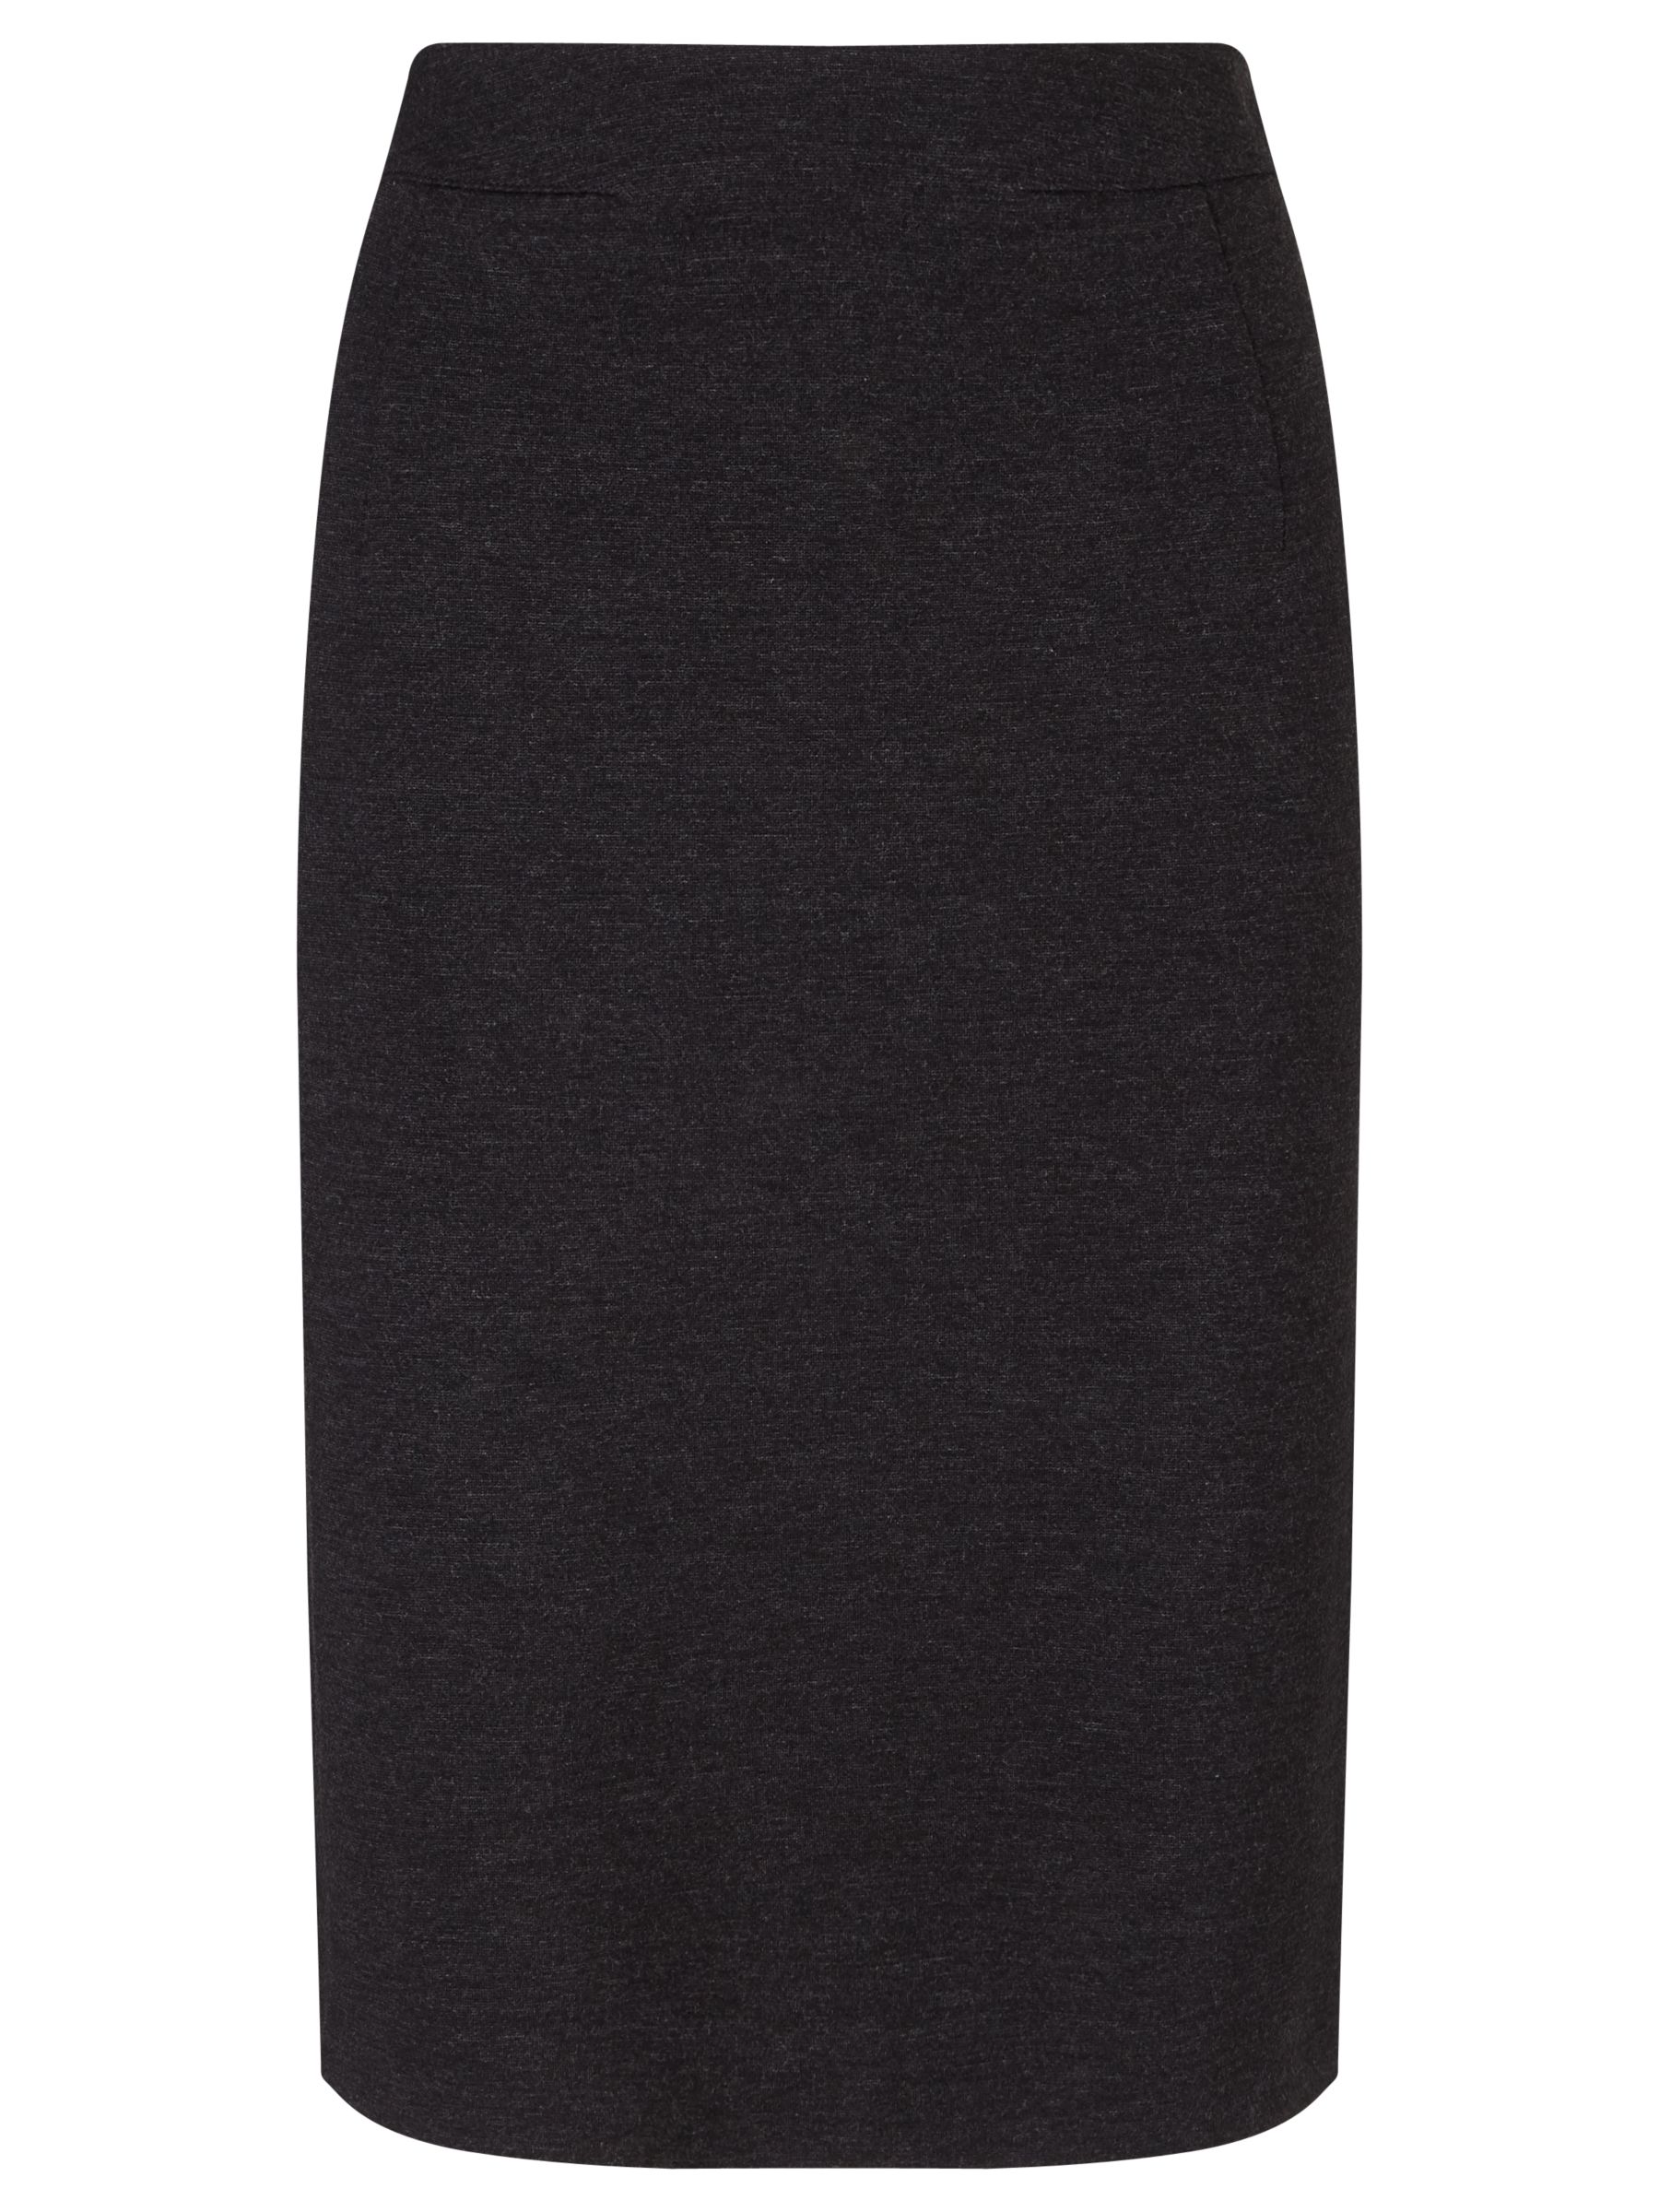 Grey | Women's Skirts | John Lewis